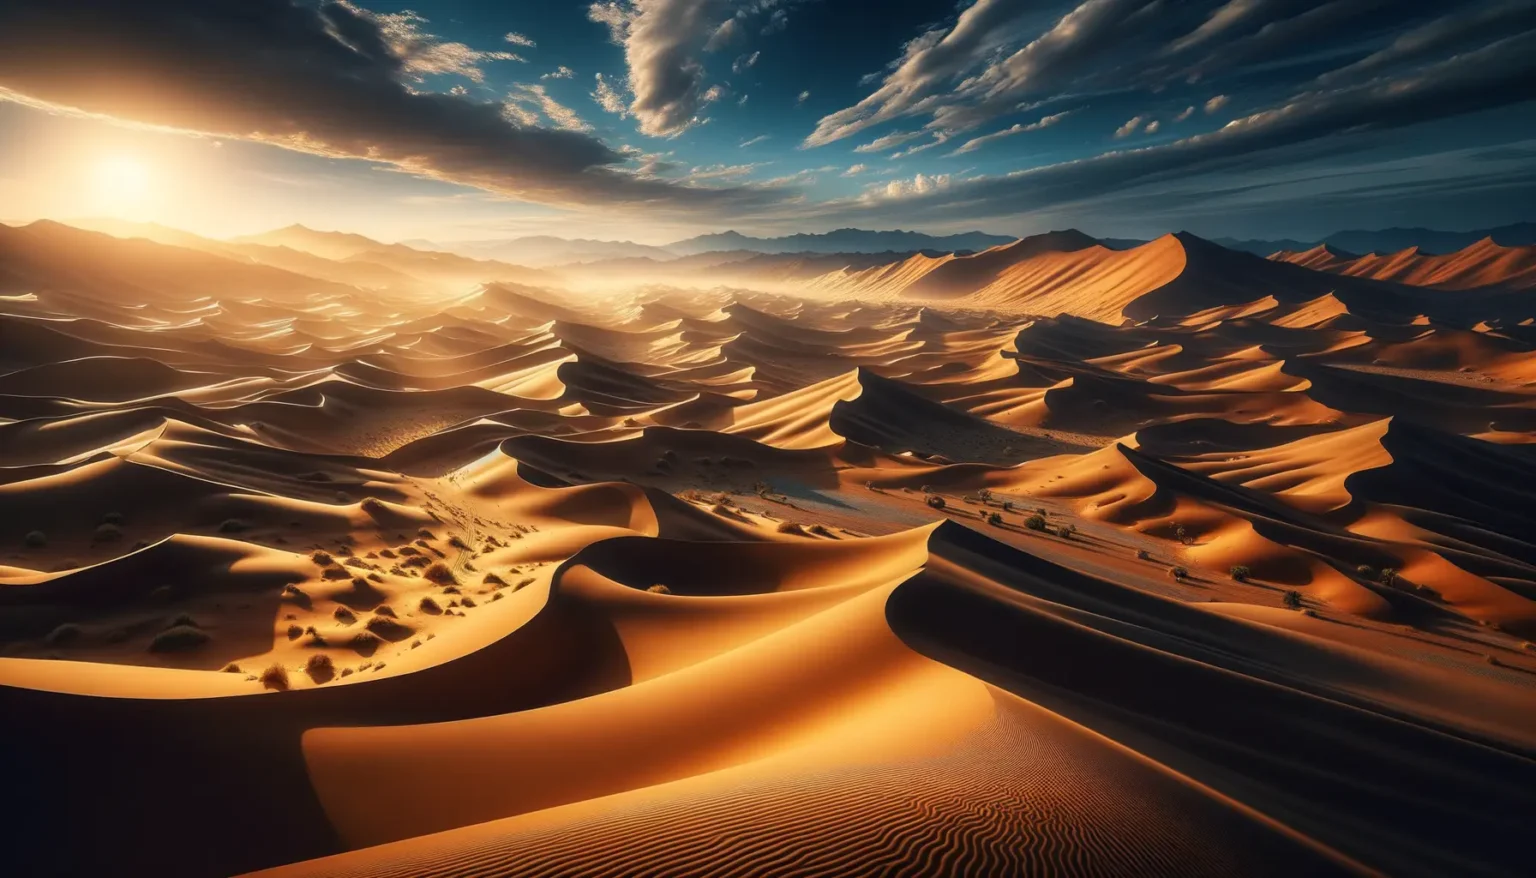 Eine dramatische Wüstenlandschaft bei Sonnenuntergang mit scharf definierten Sanddünen, deren Kämme Kontraste aus Licht und Schatten erzeugen, mit einem Hintergrund aus fernen Bergen und einem Himmel mit vereinzelten Wolken.